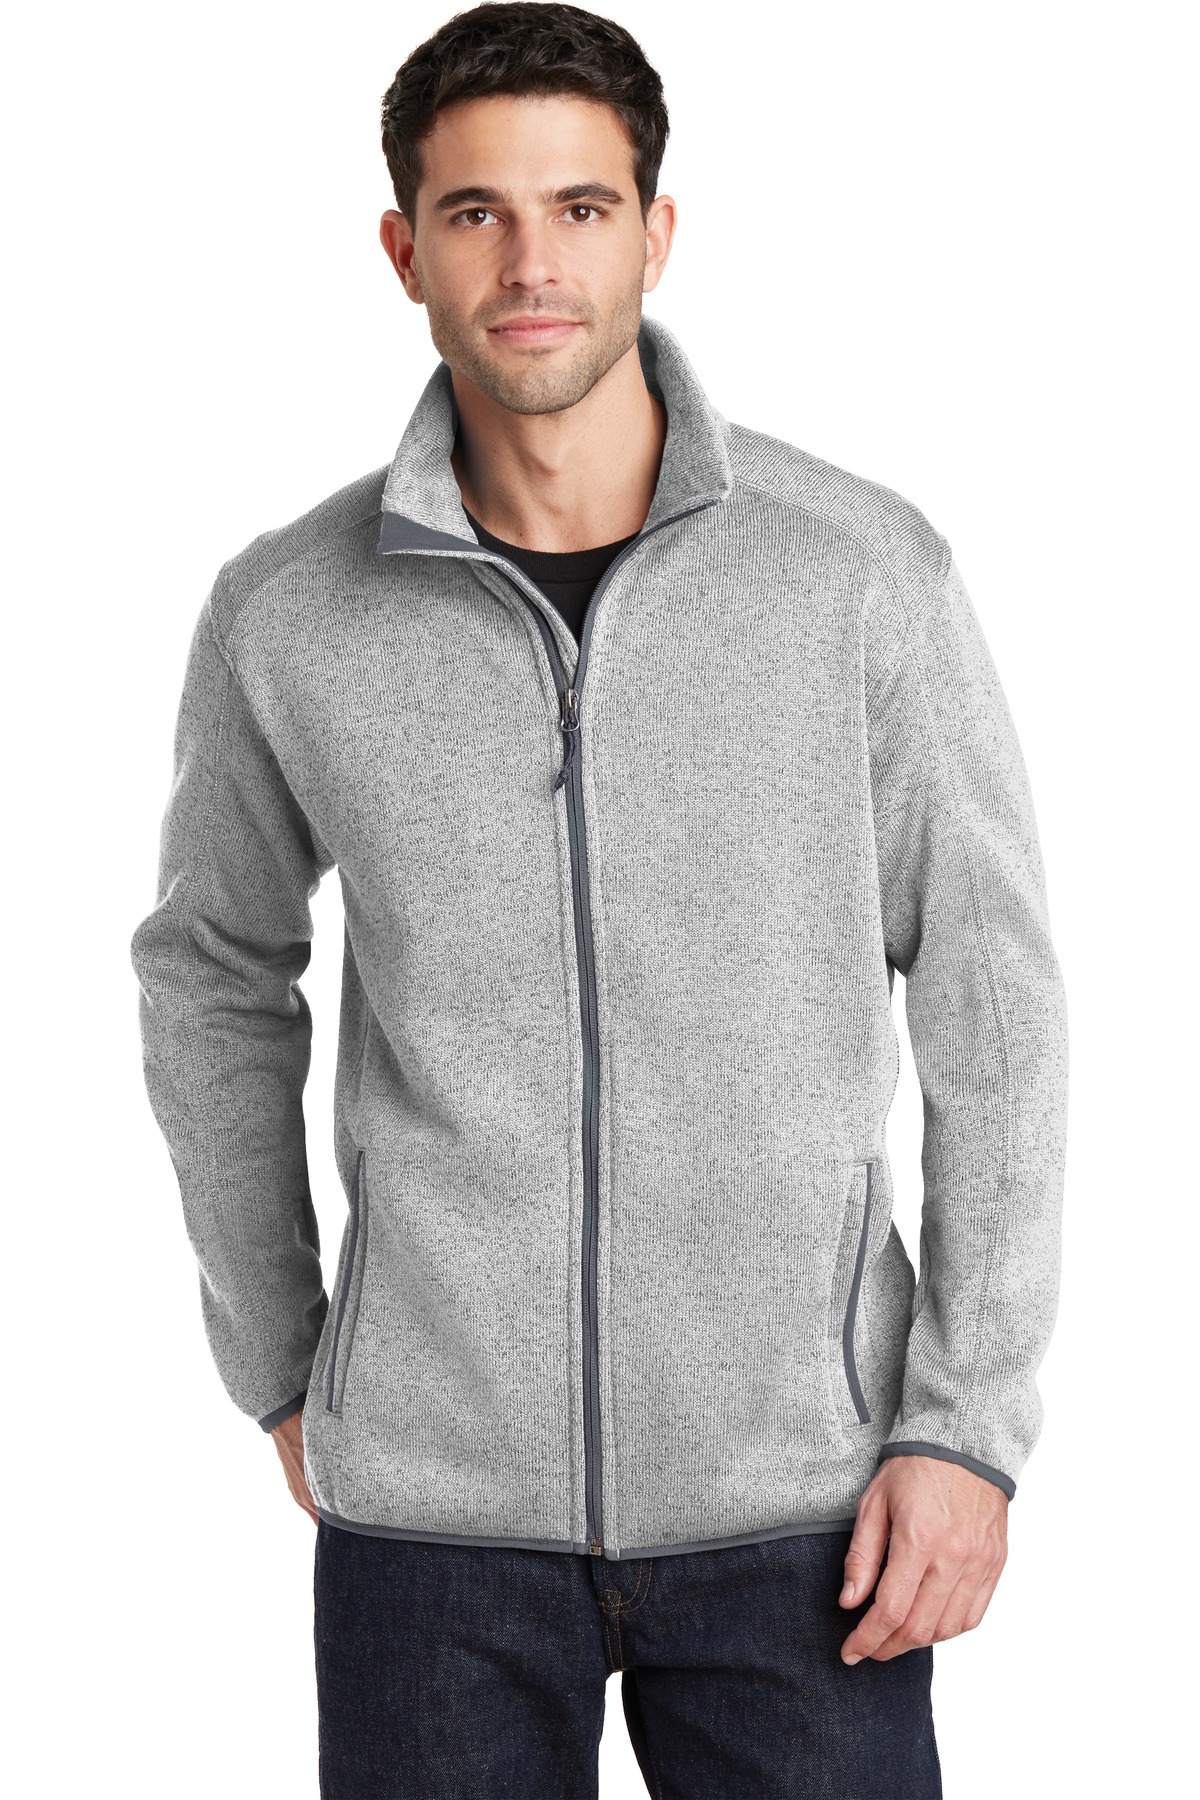 Port Authority Men's Sweater Fleece Jacket. F232